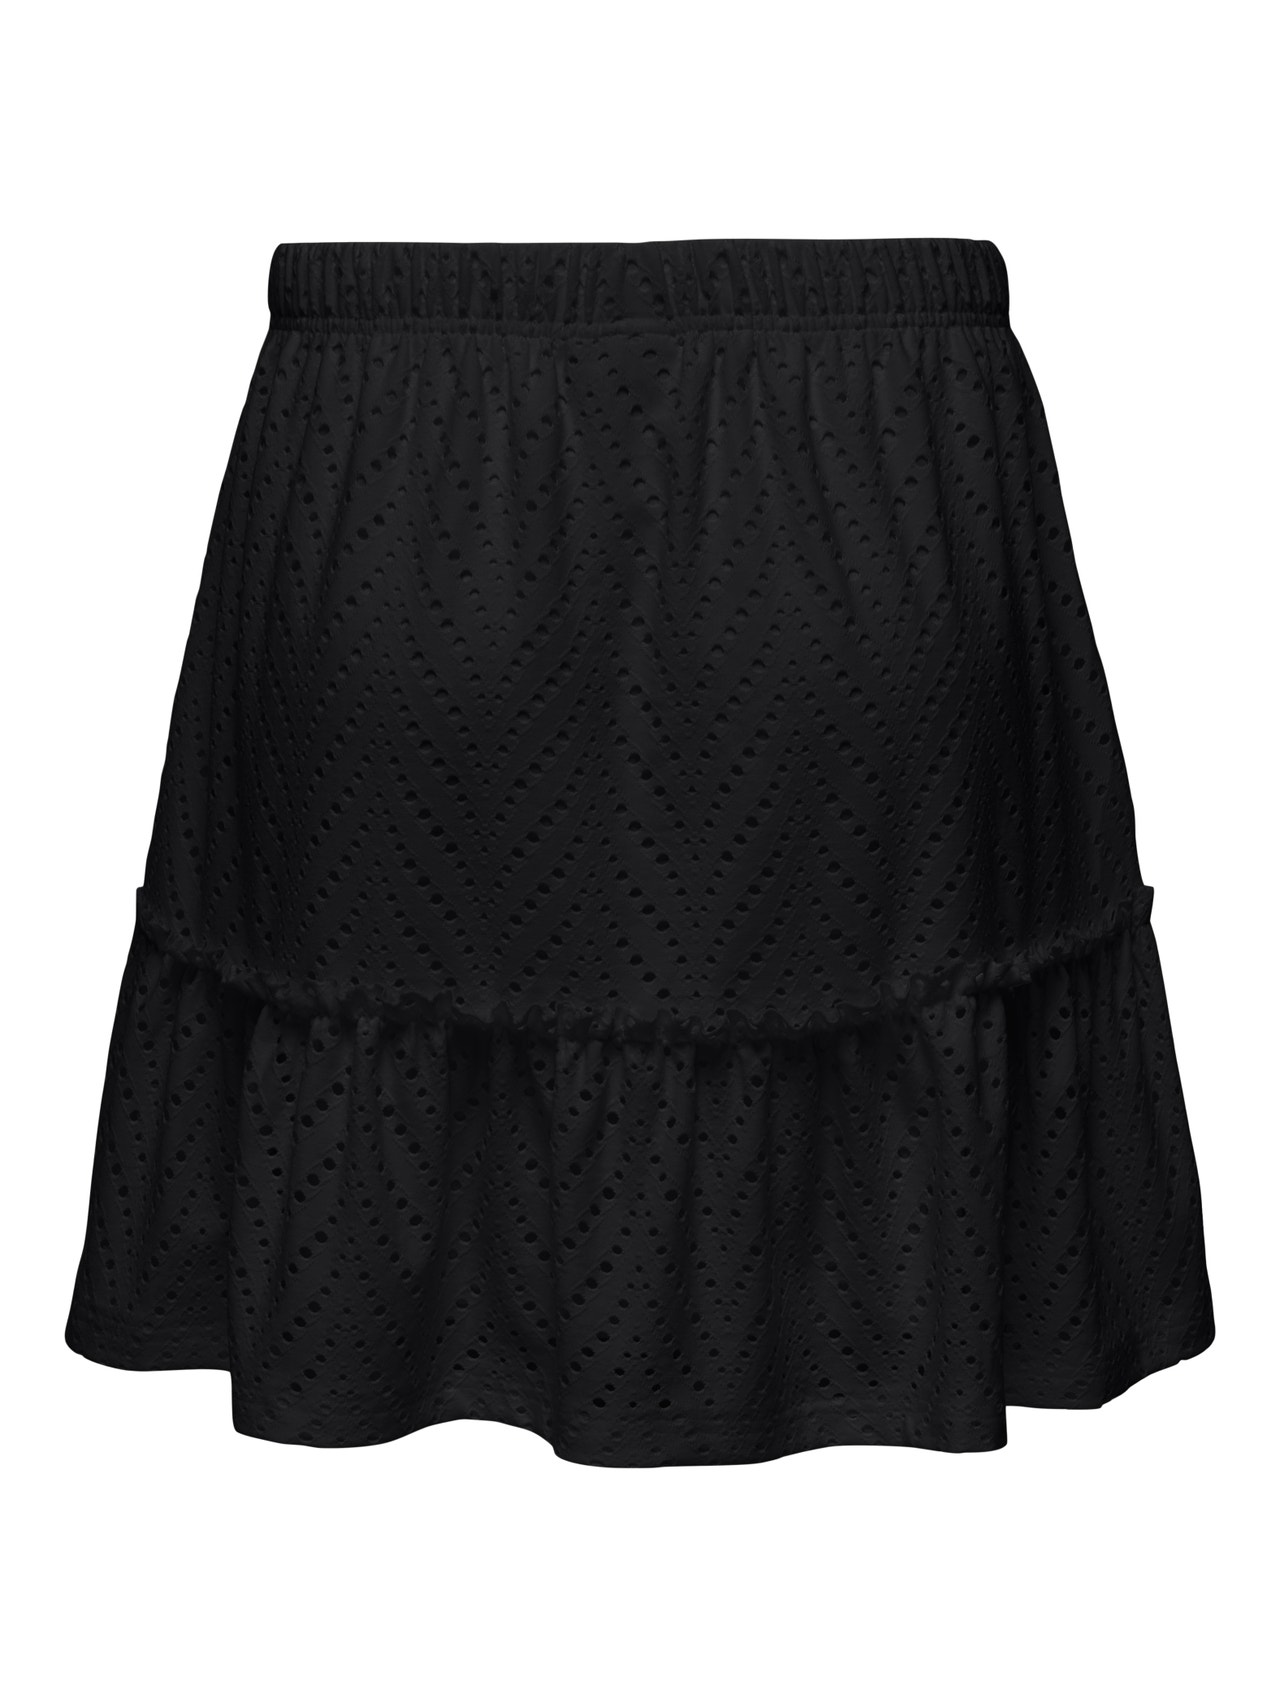 ONLY Short skirt -Black - 15254681